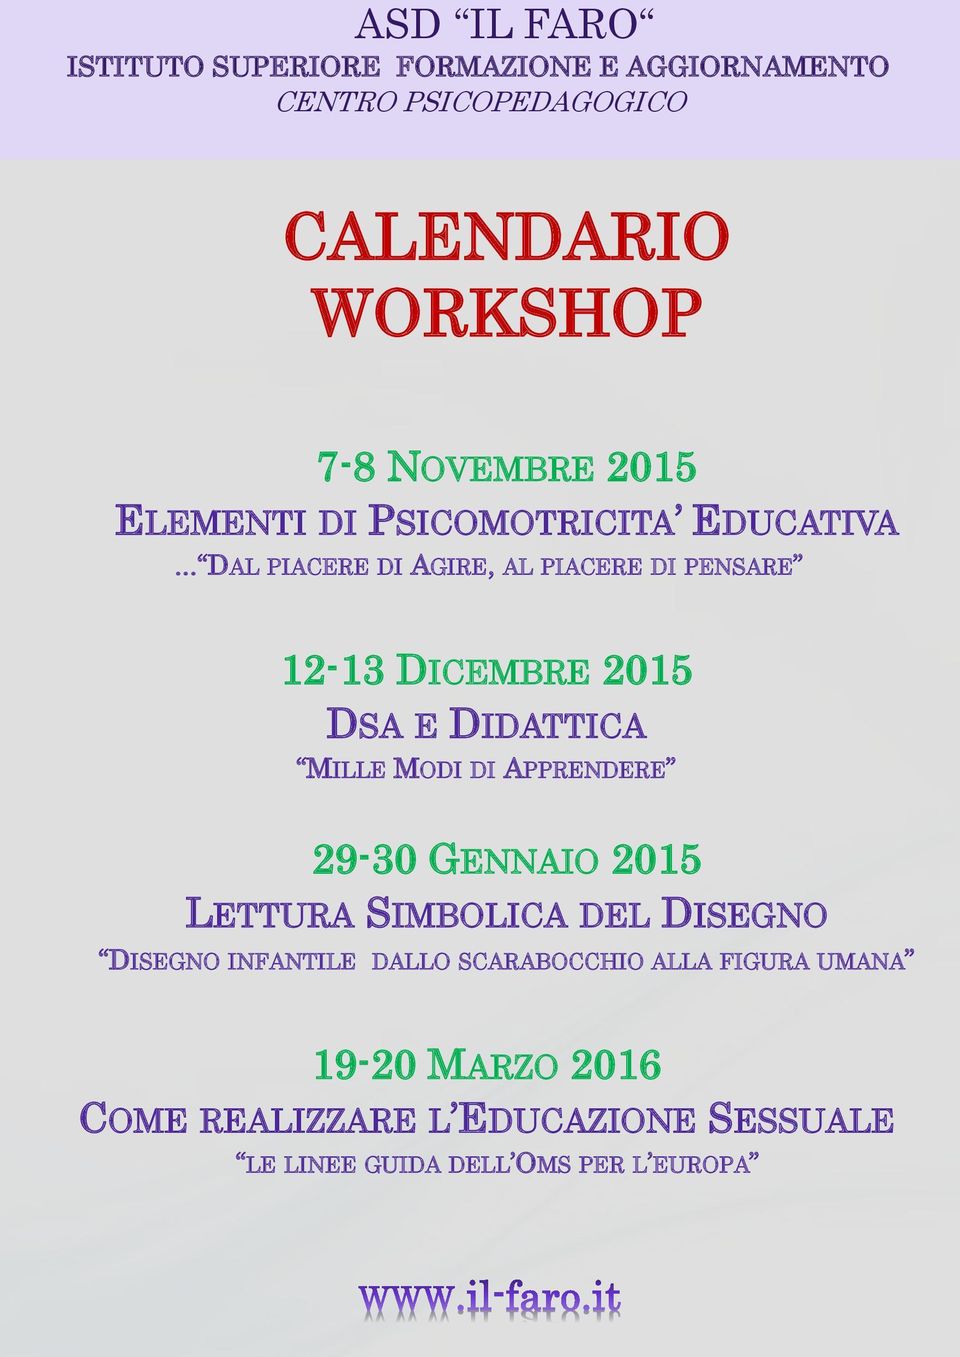 APPRENDERE 29-30 GENNAIO 2015 LETTURA SIMBOLICA DEL DISEGNO DISEGNO INFANTILE DALLO SCARABOCCHIO